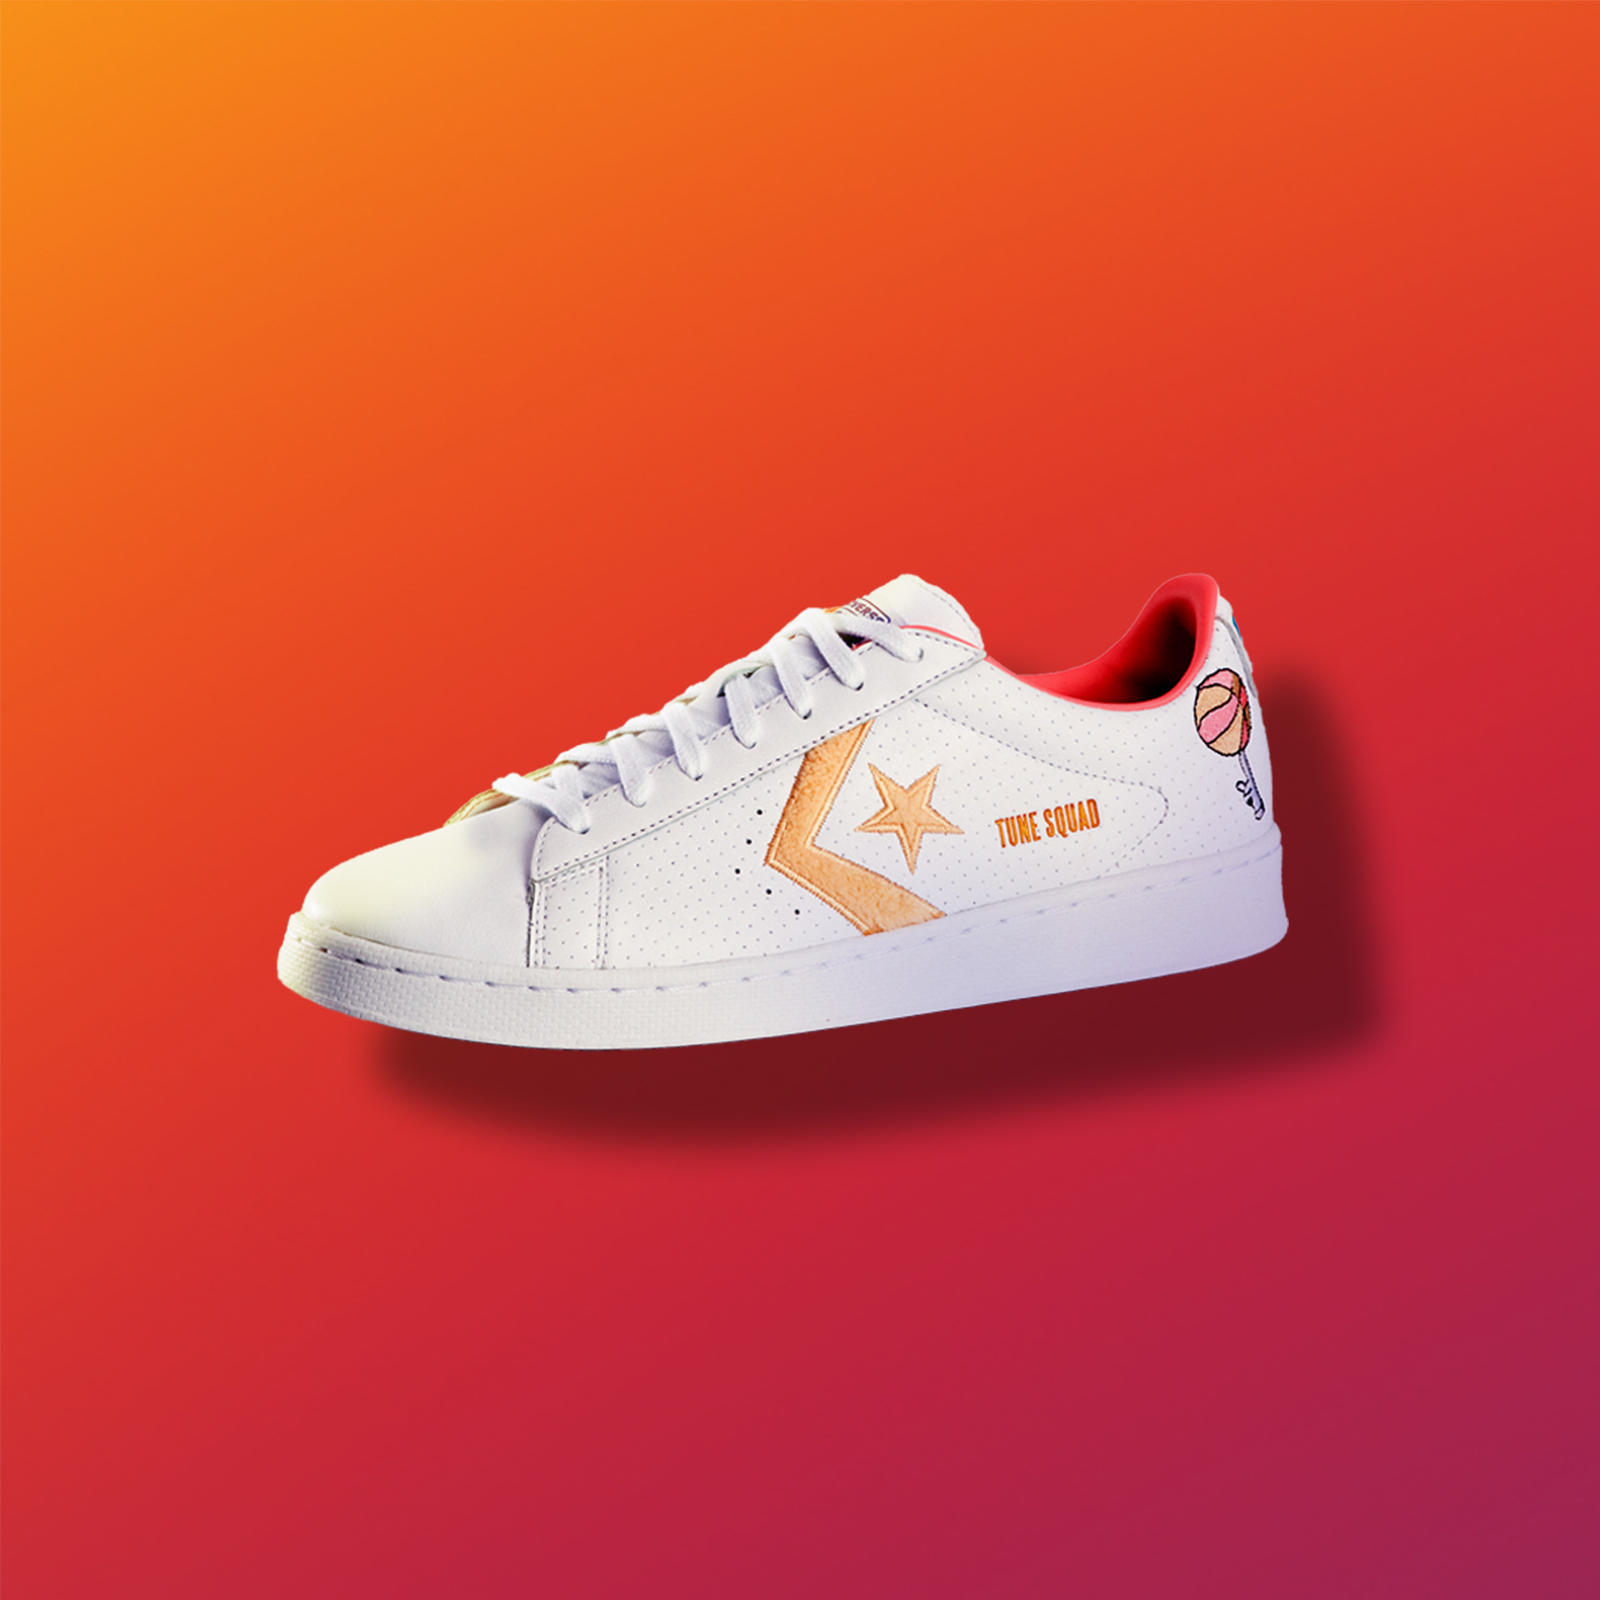 Checa la colección 'Space Jam: A New Legacy' de Nike y Converse para que le entres al juego